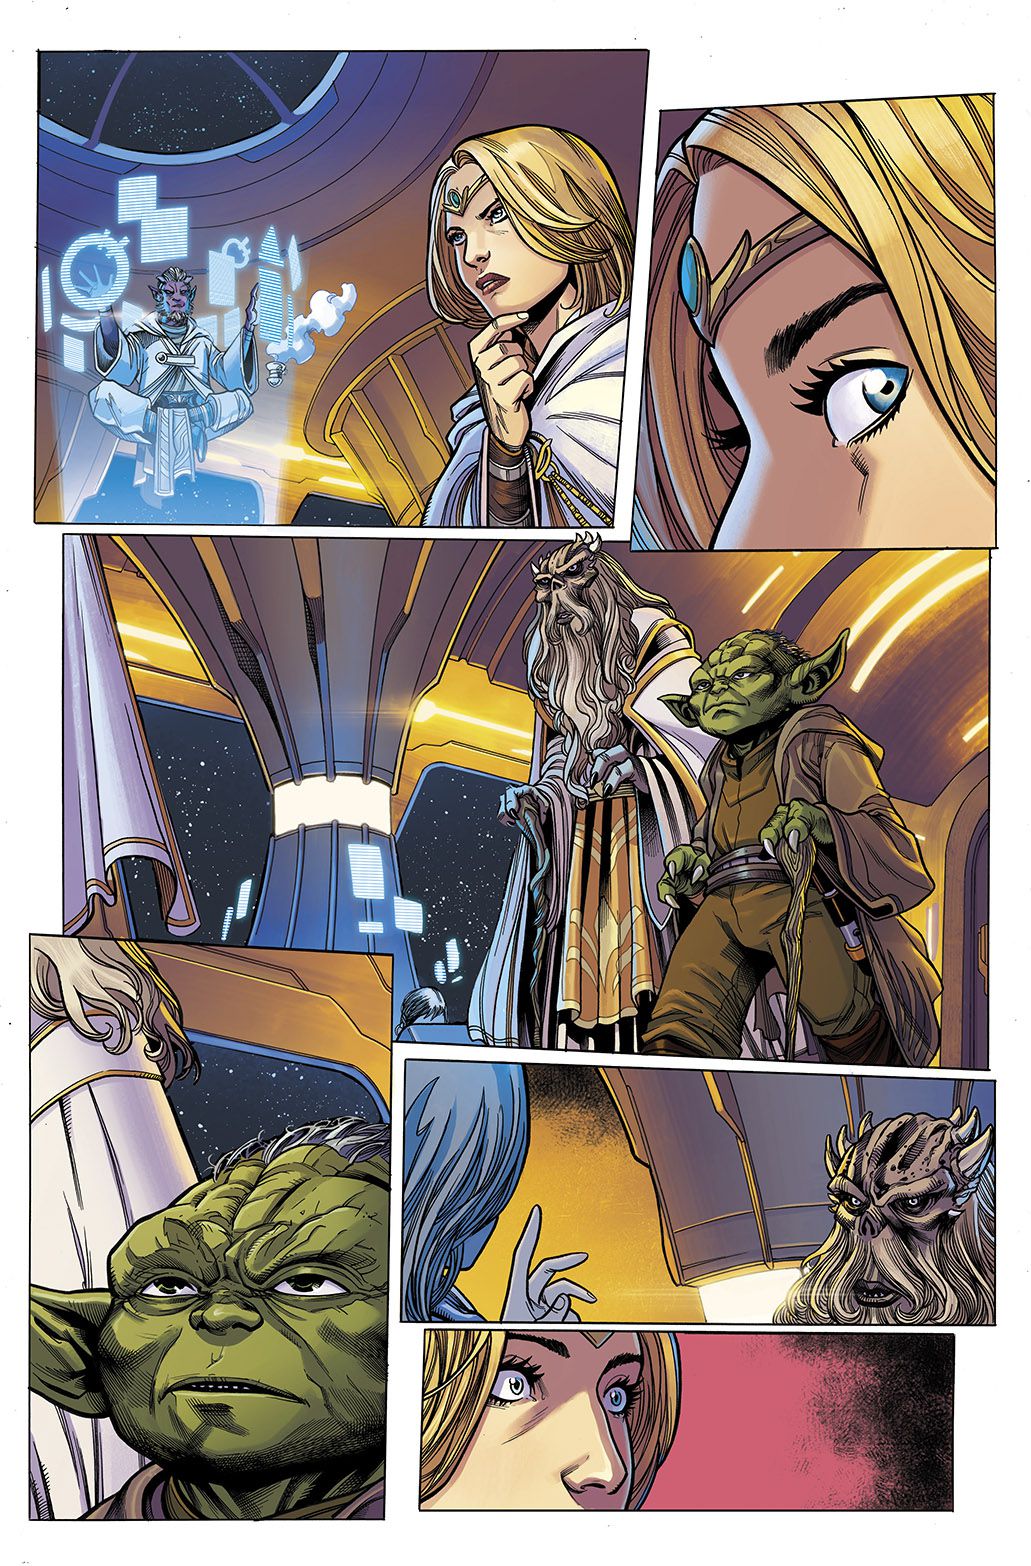 Jedi Master Avar Kriss distoglie lo sguardo sorpreso dalla levitante Estala Maru nel vedere i Grandmasters Veter e Yoda avvicinarsi, in Star Wars: The High Republic # 1, Marvel Comics (2021). 